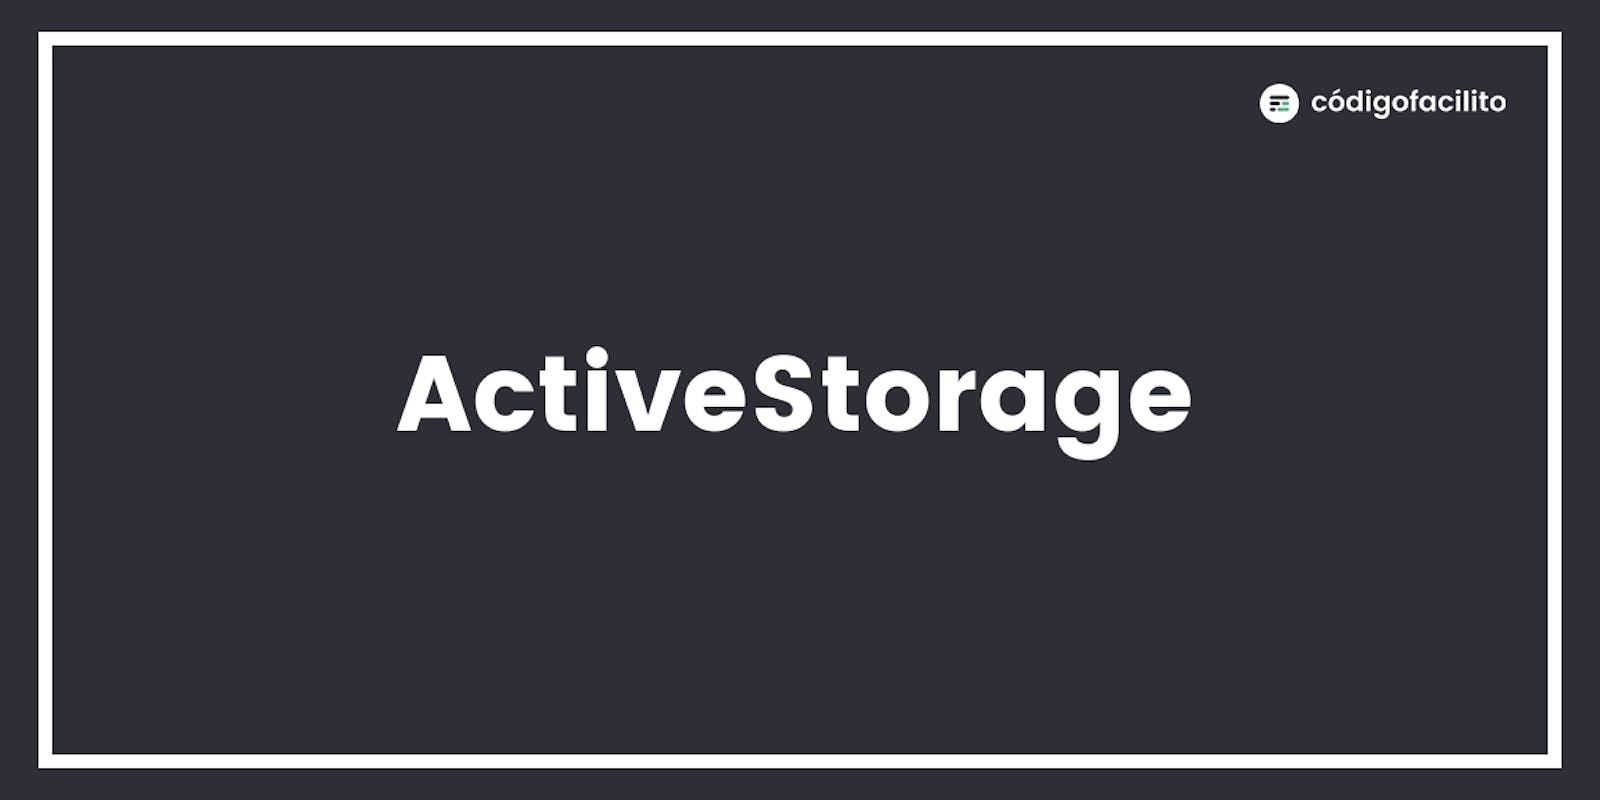 Active Storage - Como activarlo y usarlo